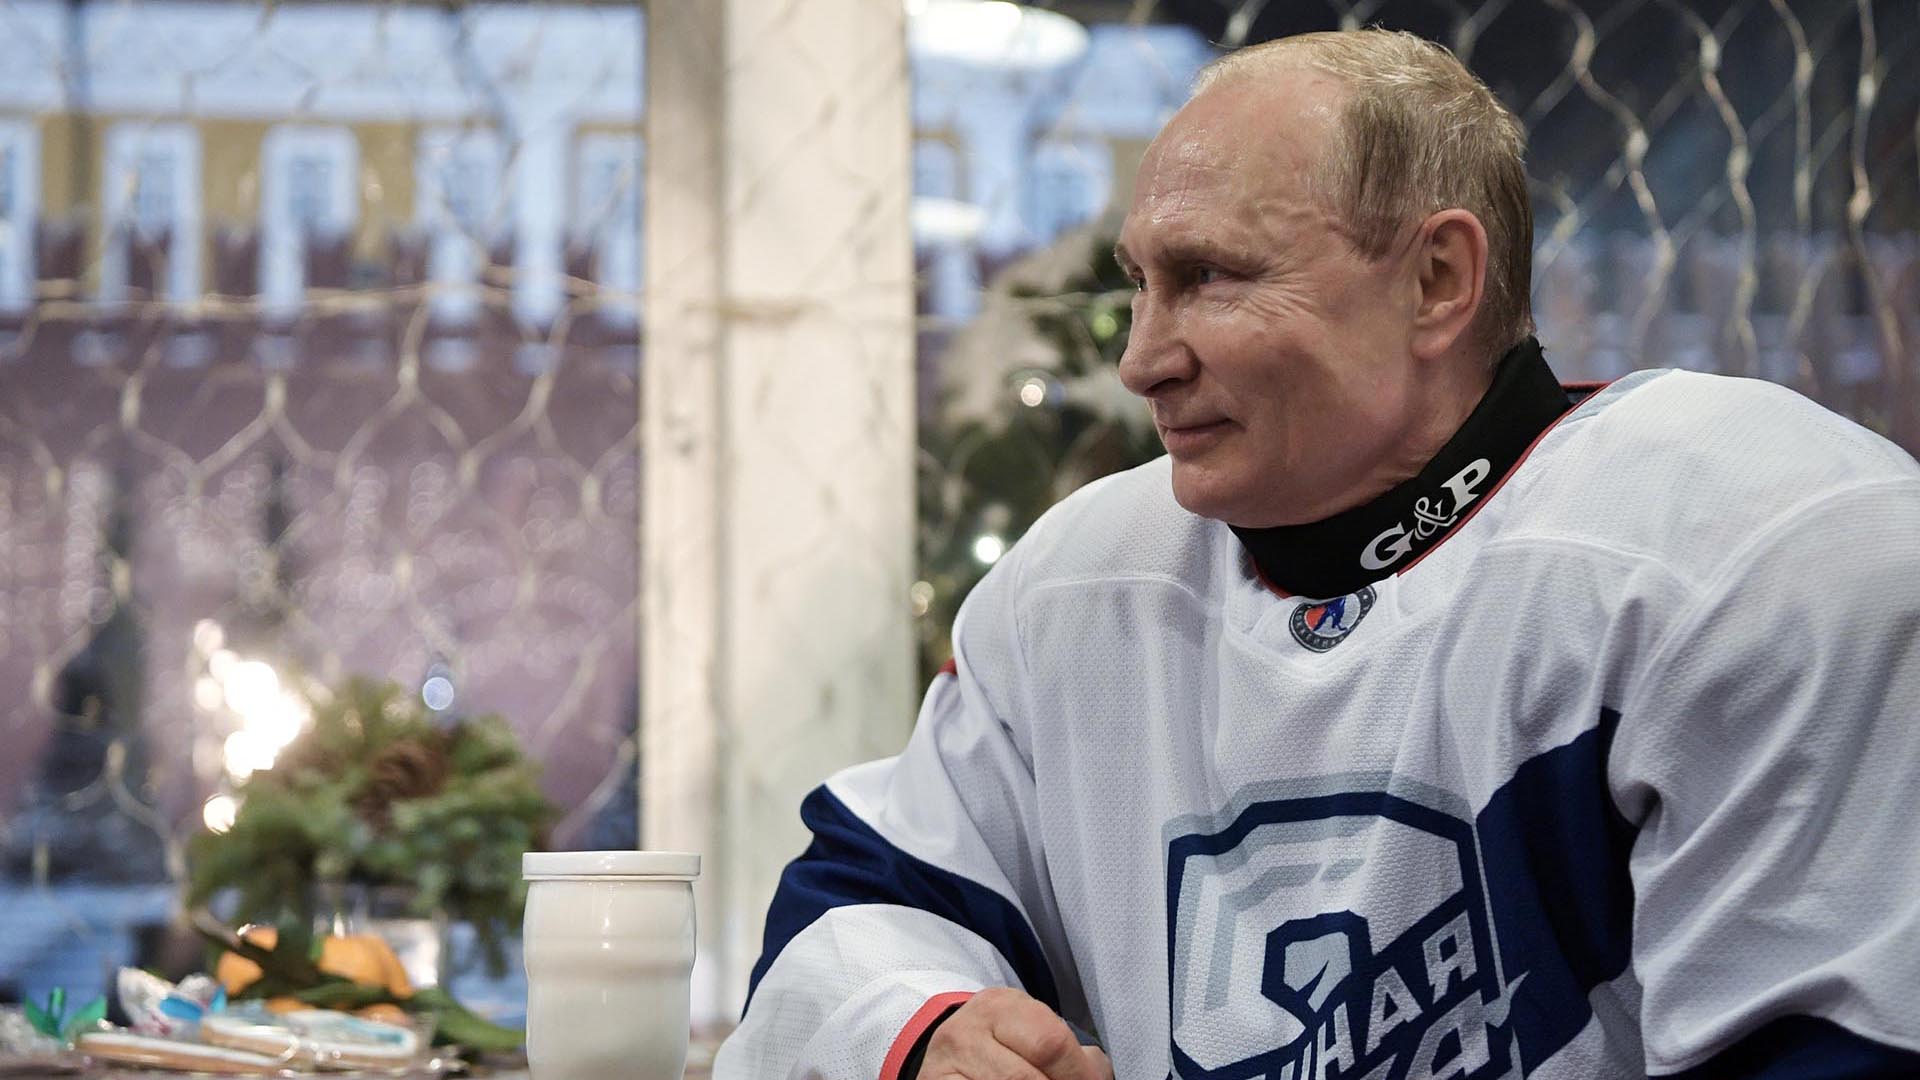 Vladimir Putin (REUTERS)